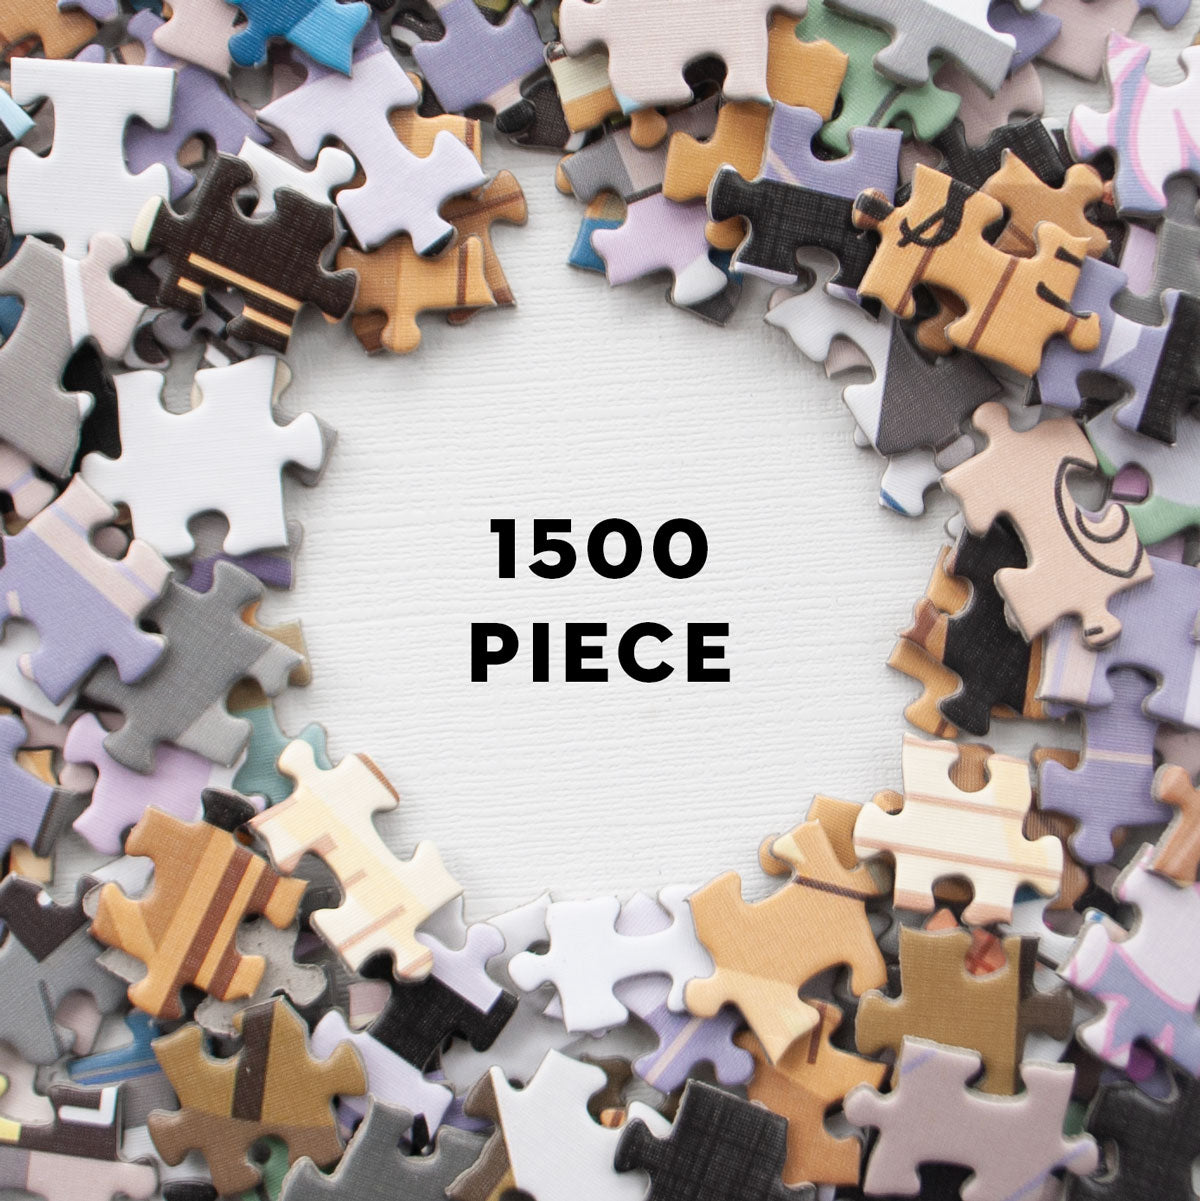 Ravensburger 16000: Paris Romance (1500 Piece Jigsaw Puzzle) – Kidding  Around NYC